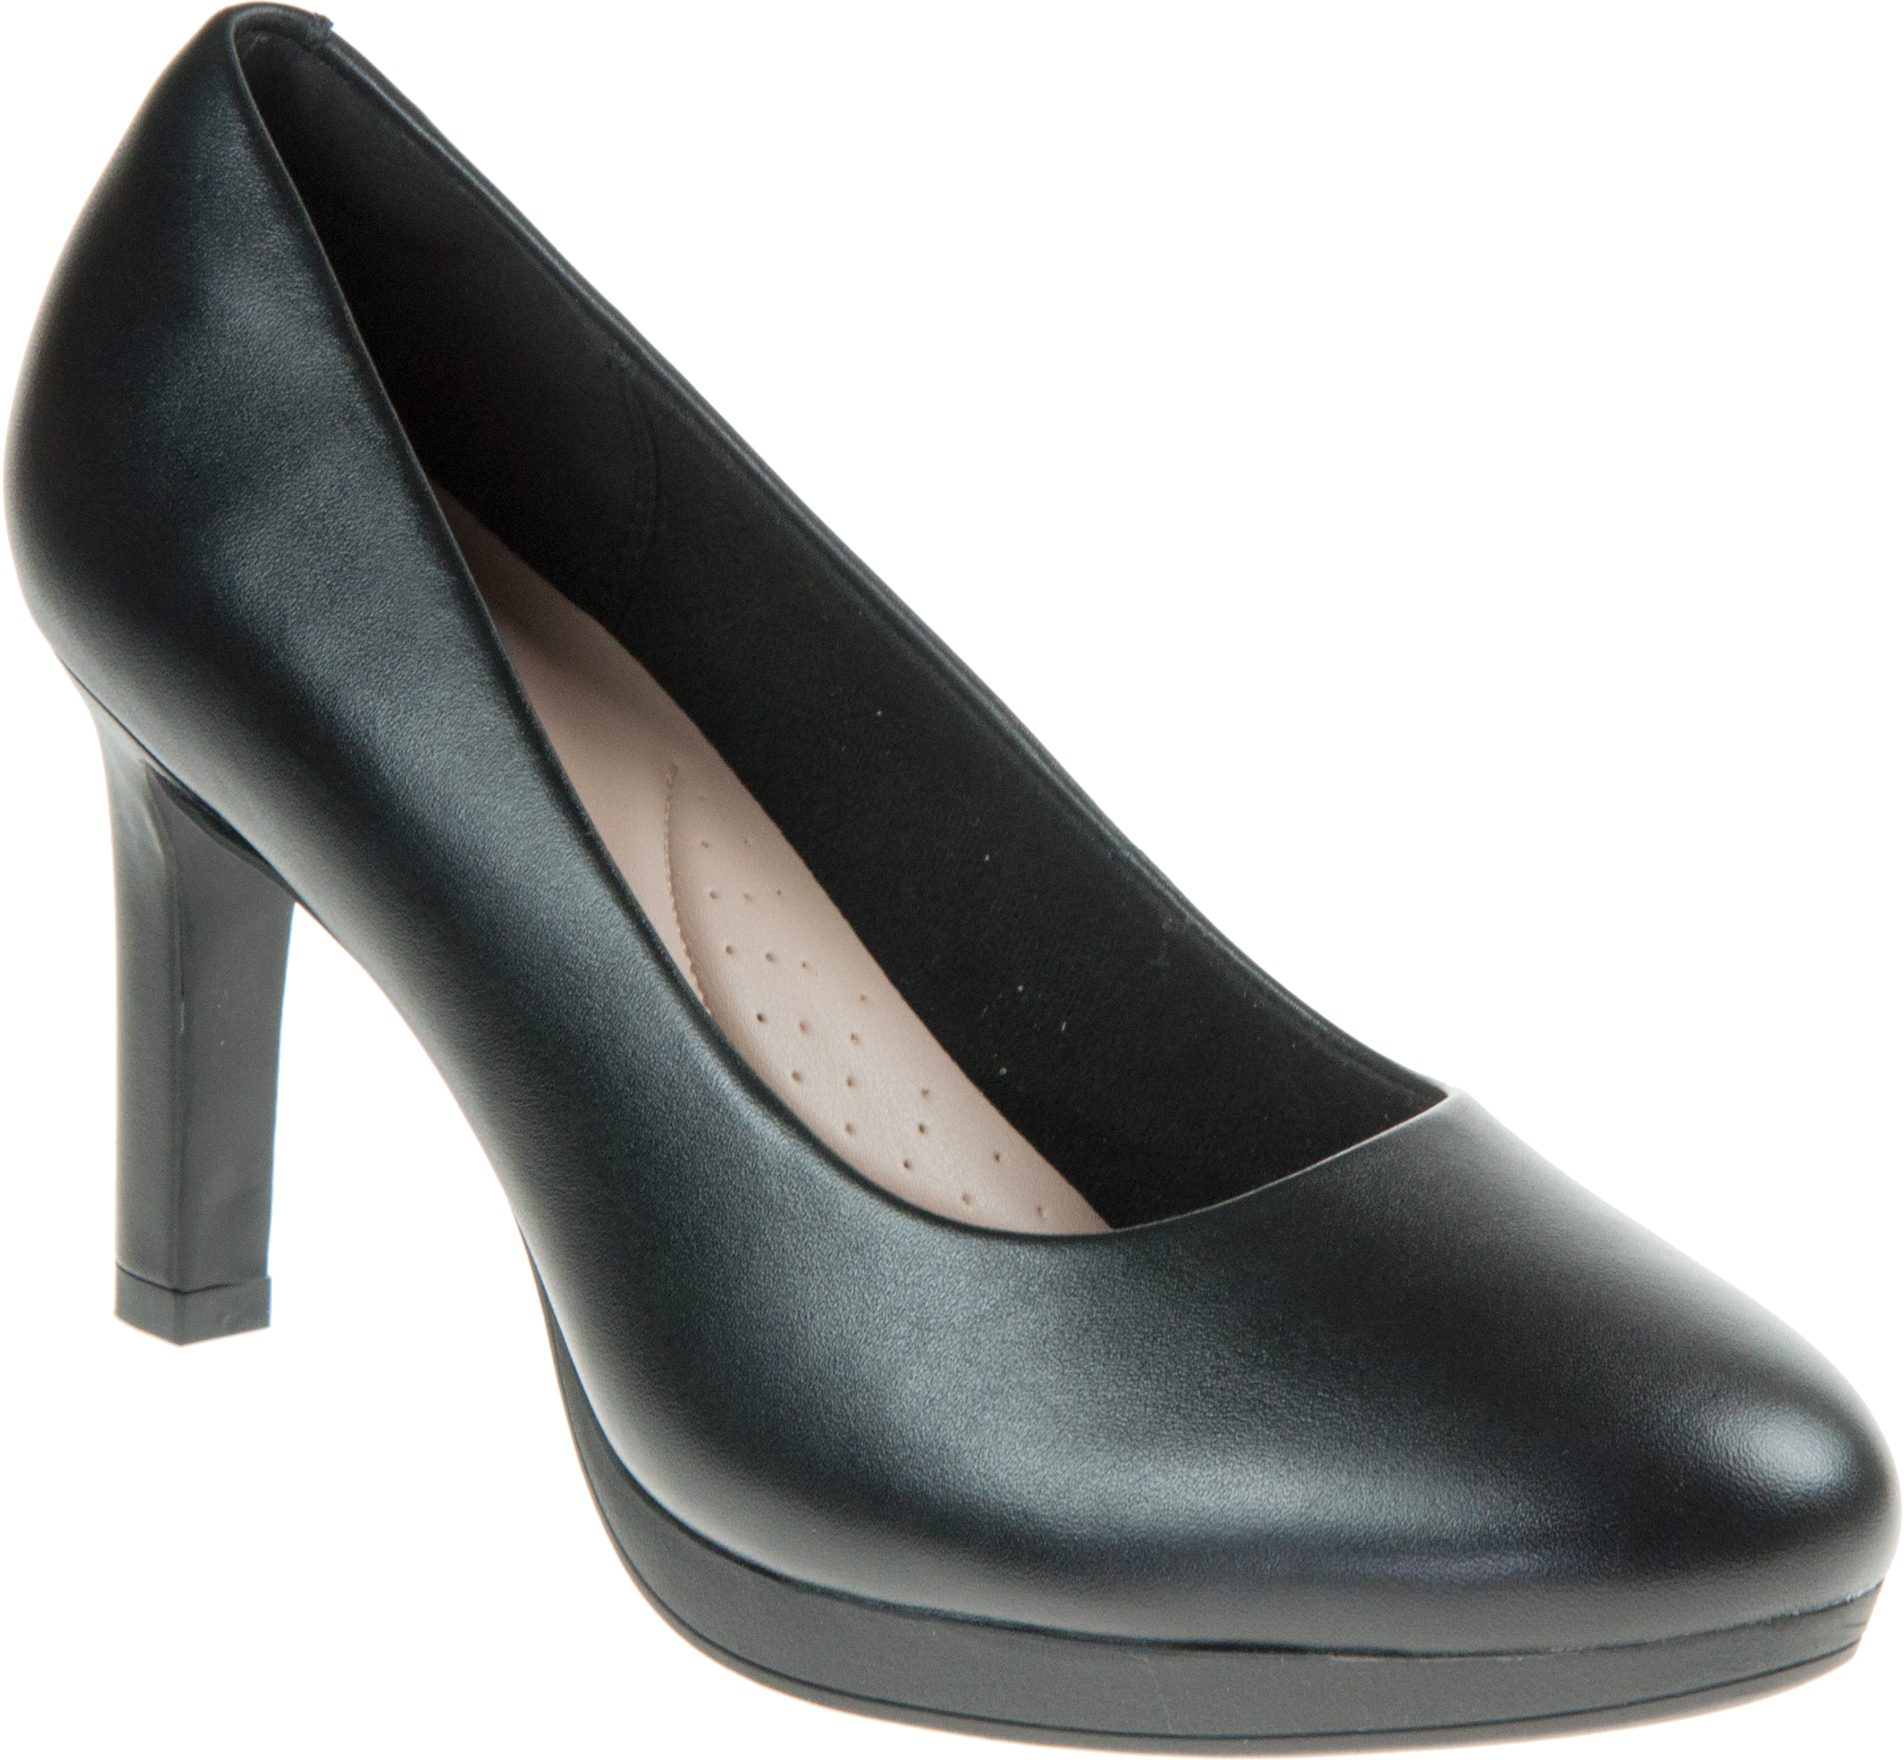 Clarks Ambyr Joy Black Leather 26157764 - Court Shoes - Humphries